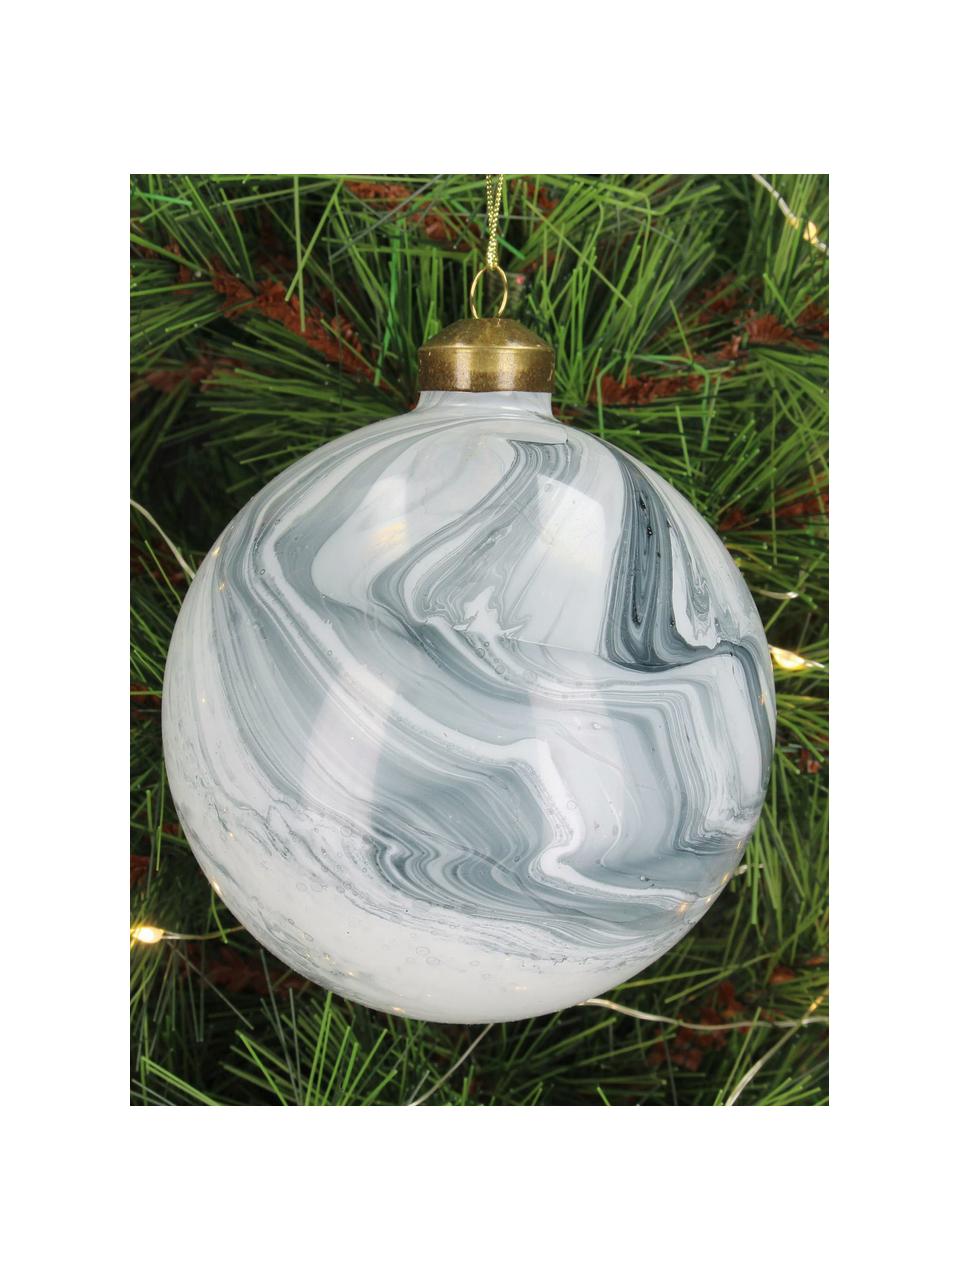 Weihnachtskugeln Marble in Marmoroptik, 6 Stück, Glas, Graublau, Weiss, hell, Ø 10 cm